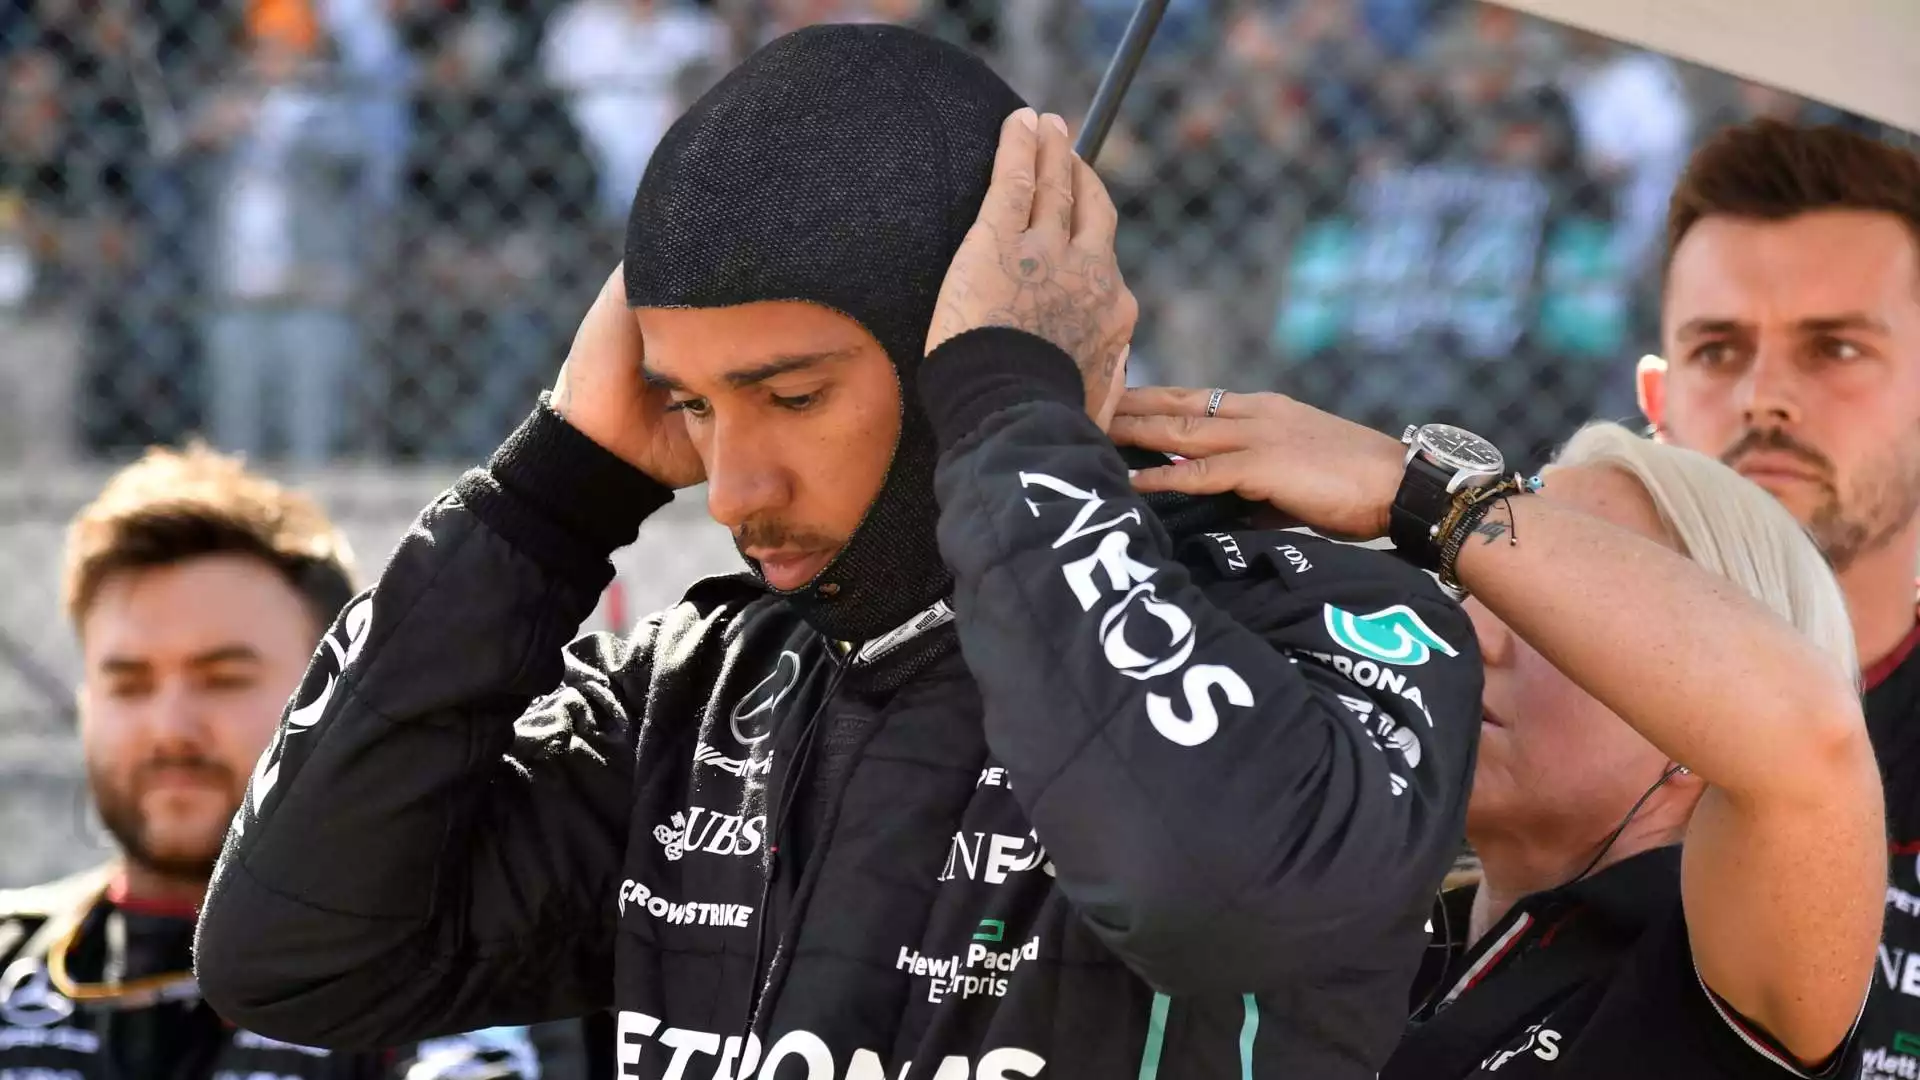 Lewis Hamilton prima della partenza: la sua gara è durata pochissimo